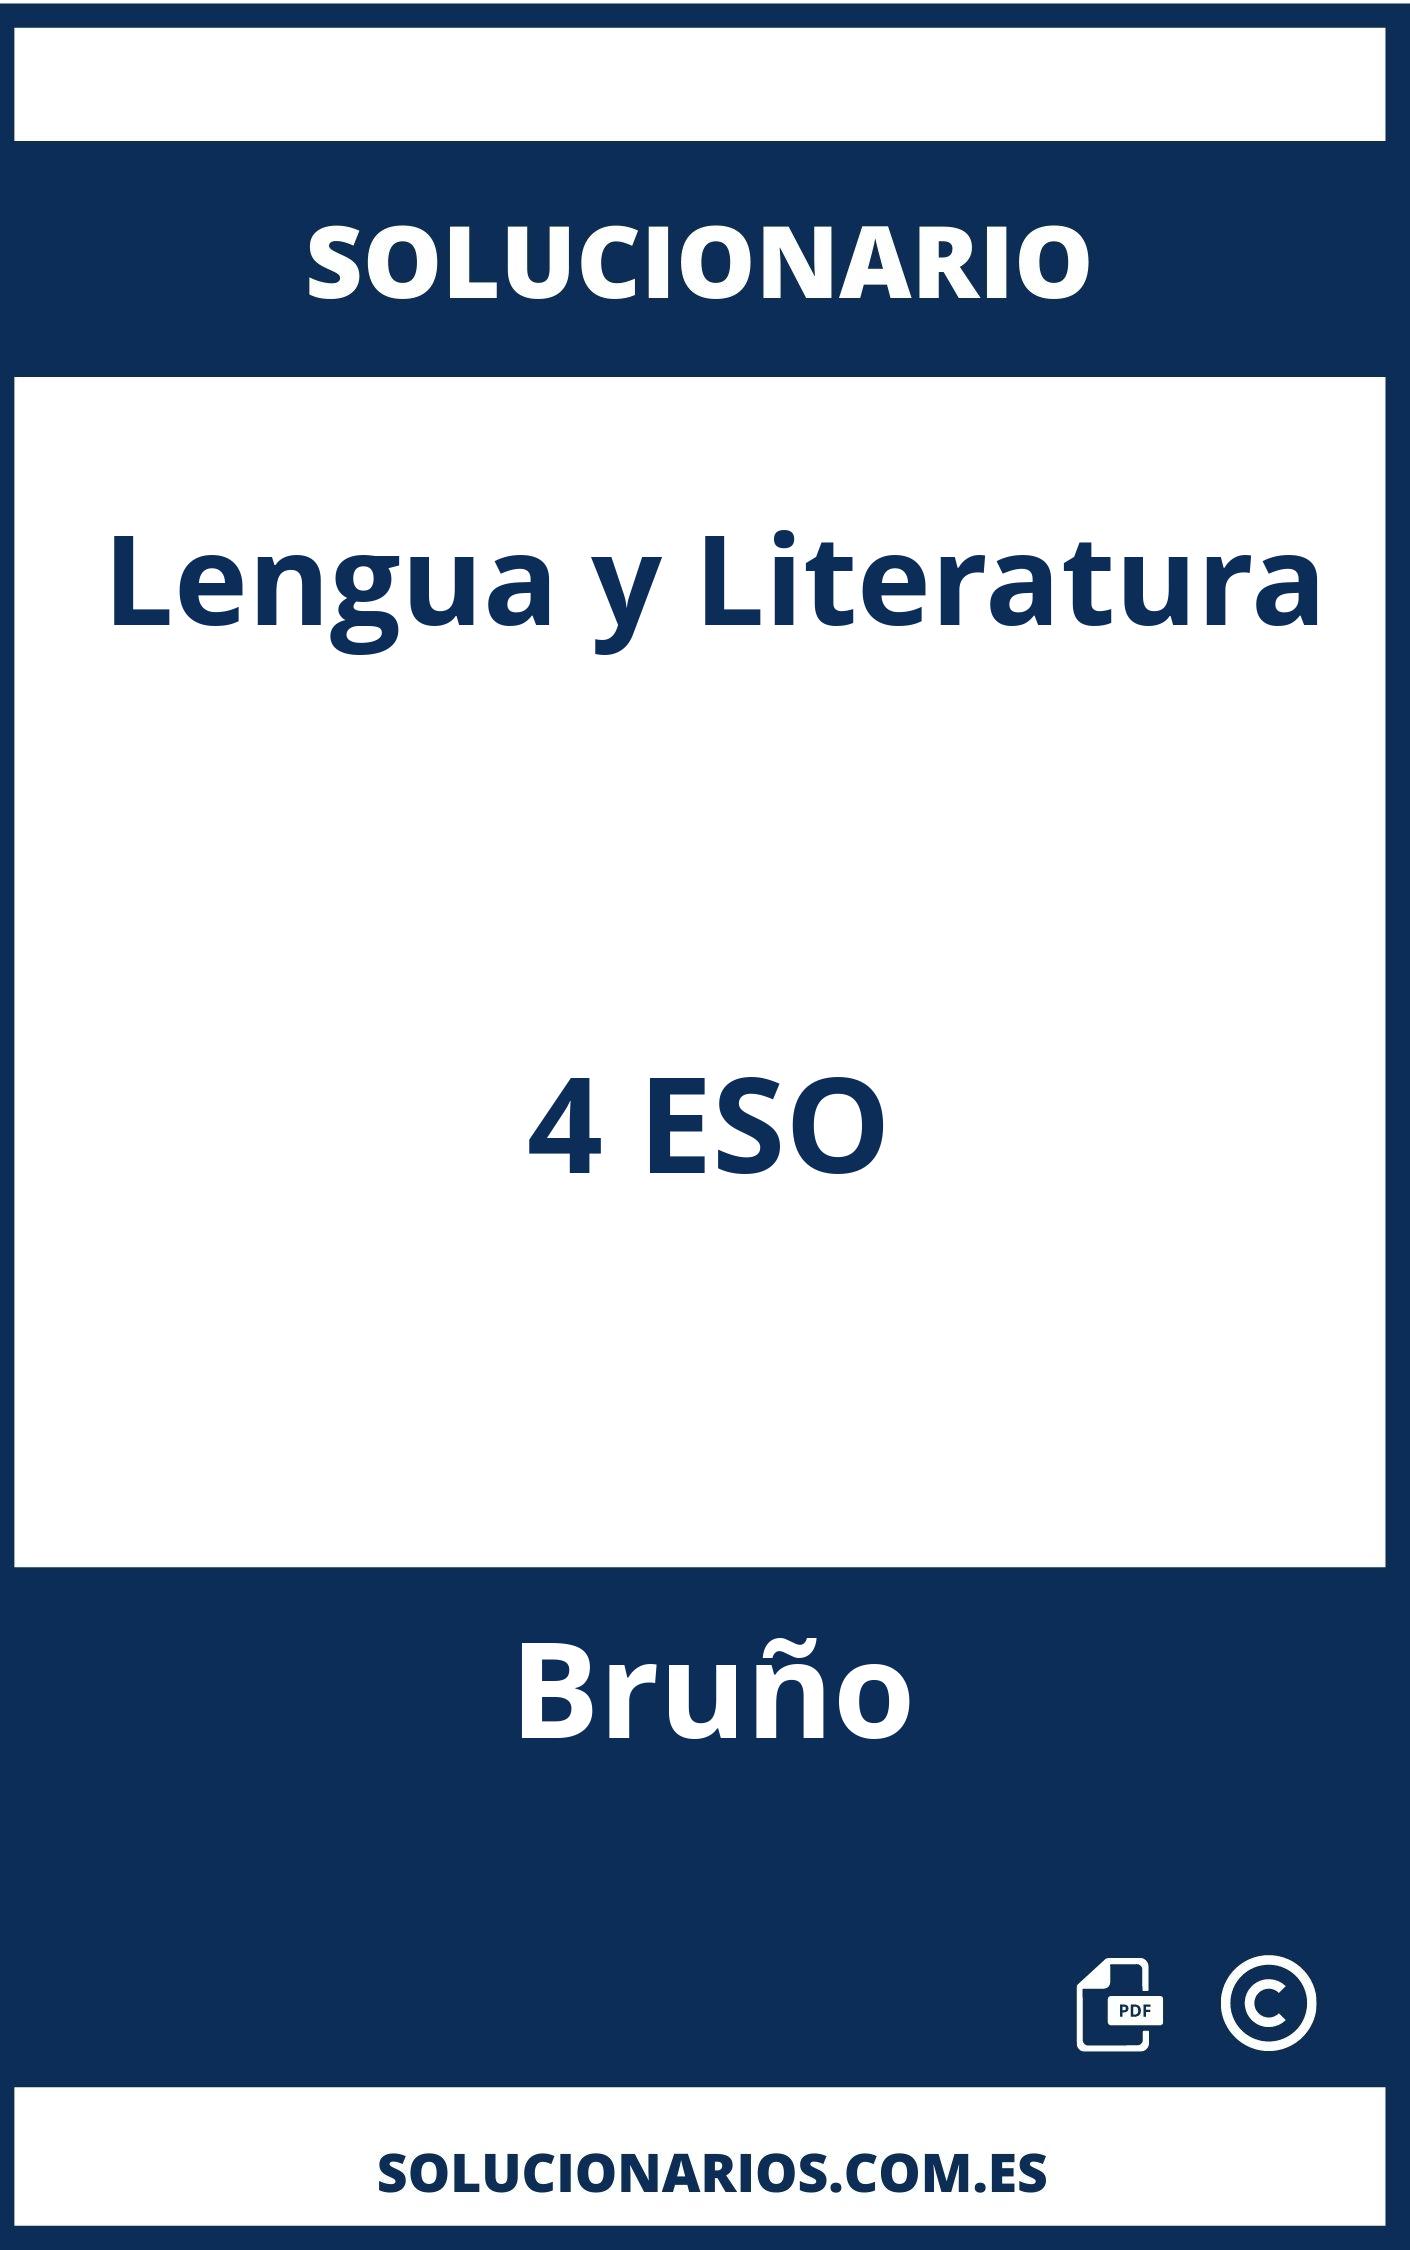 Solucionario Lengua y Literatura 4 ESO Bruño